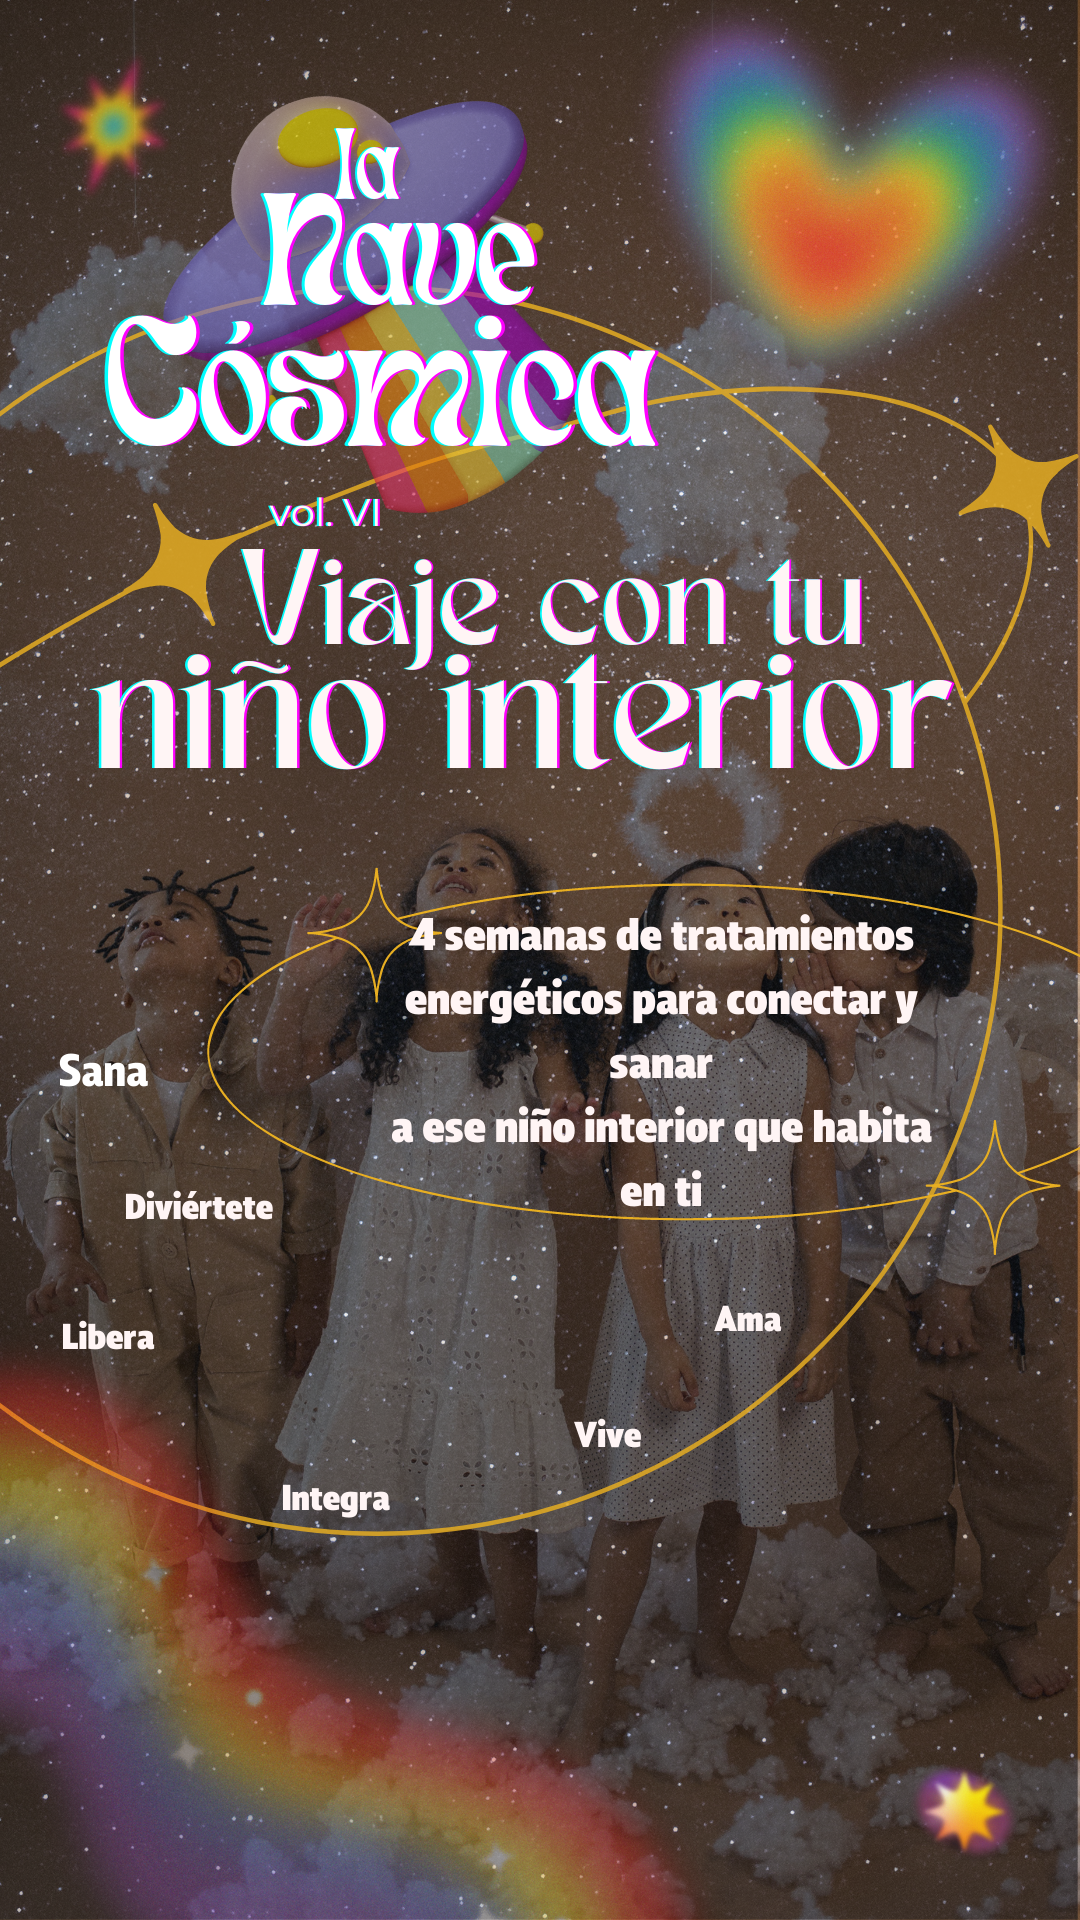 La Nave Cósmica, Edición "Viaje con tu Niño Interior"